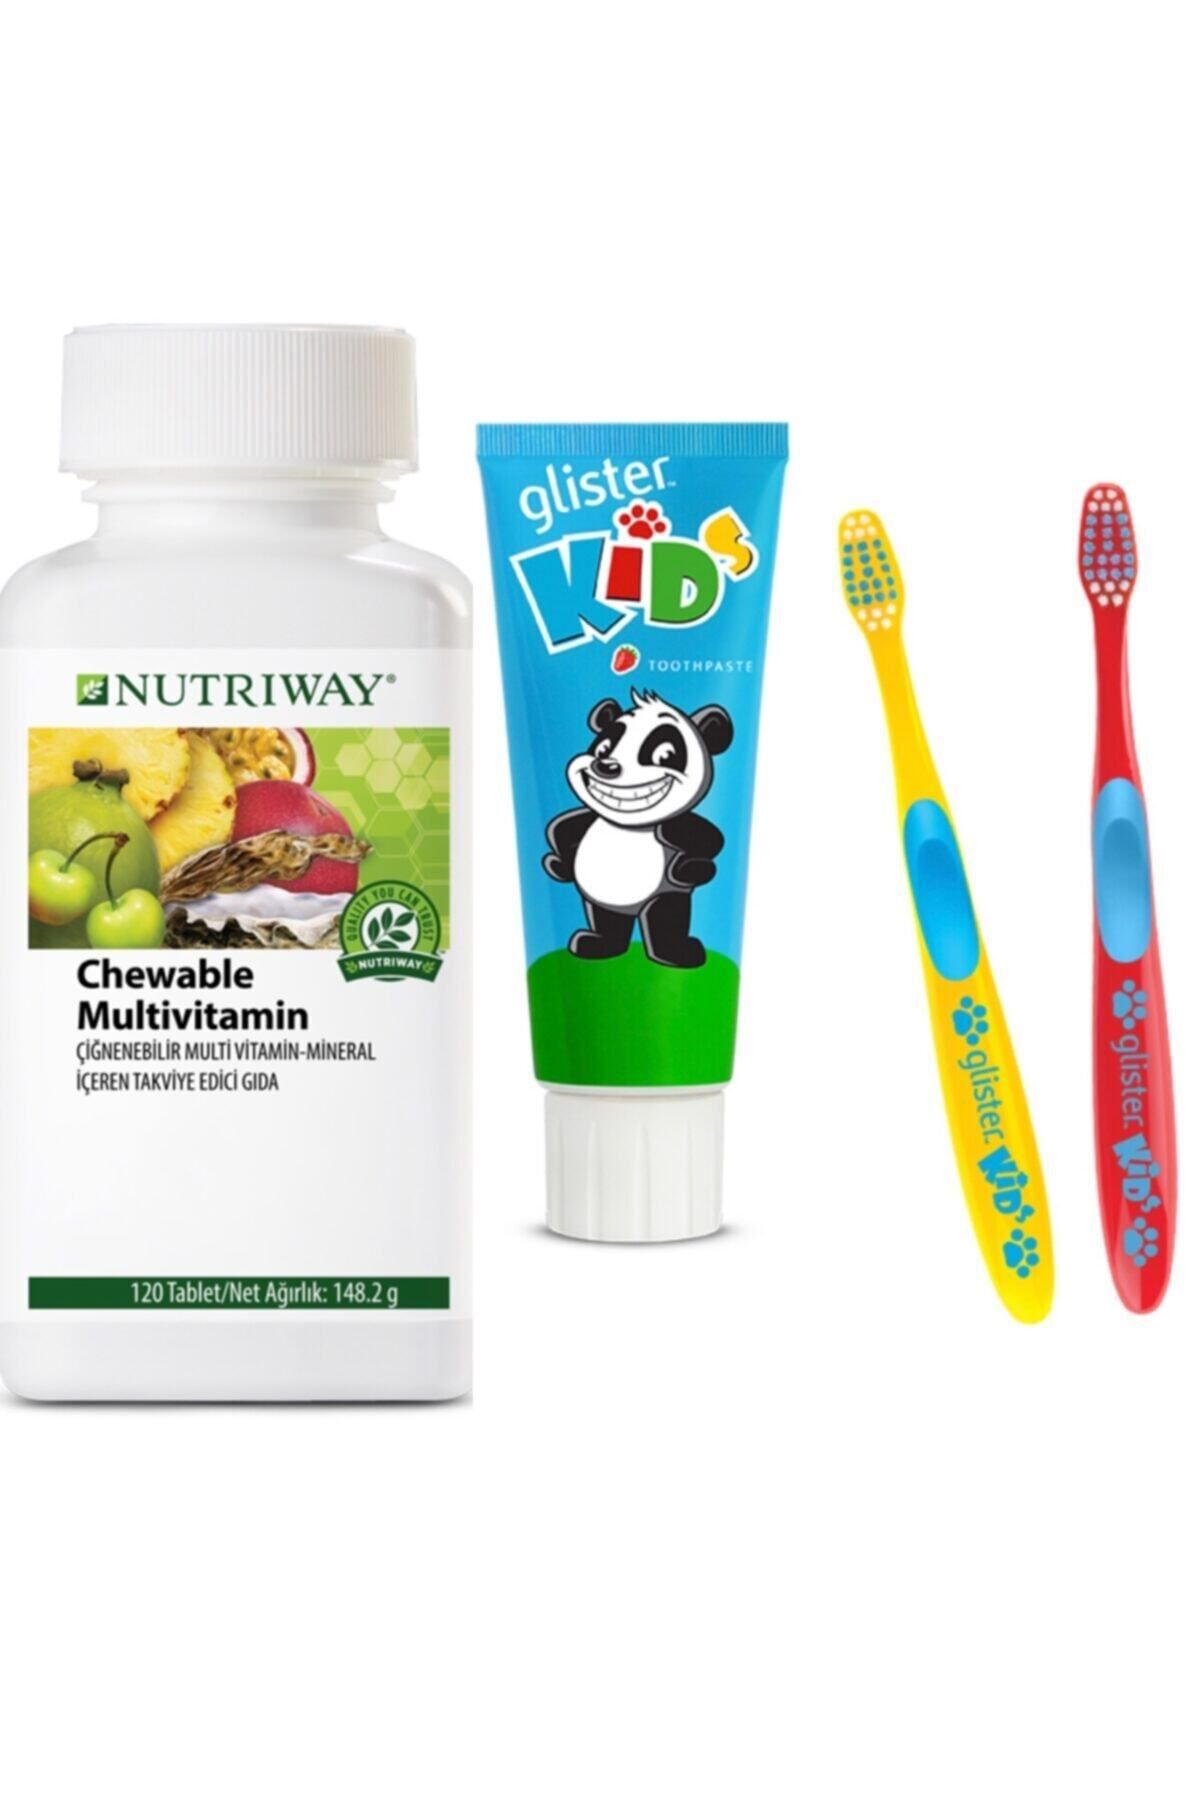 Nutriway Çocuklara Özel Nutriway Multivitamin Ve Glister Ağız Bakım Seti